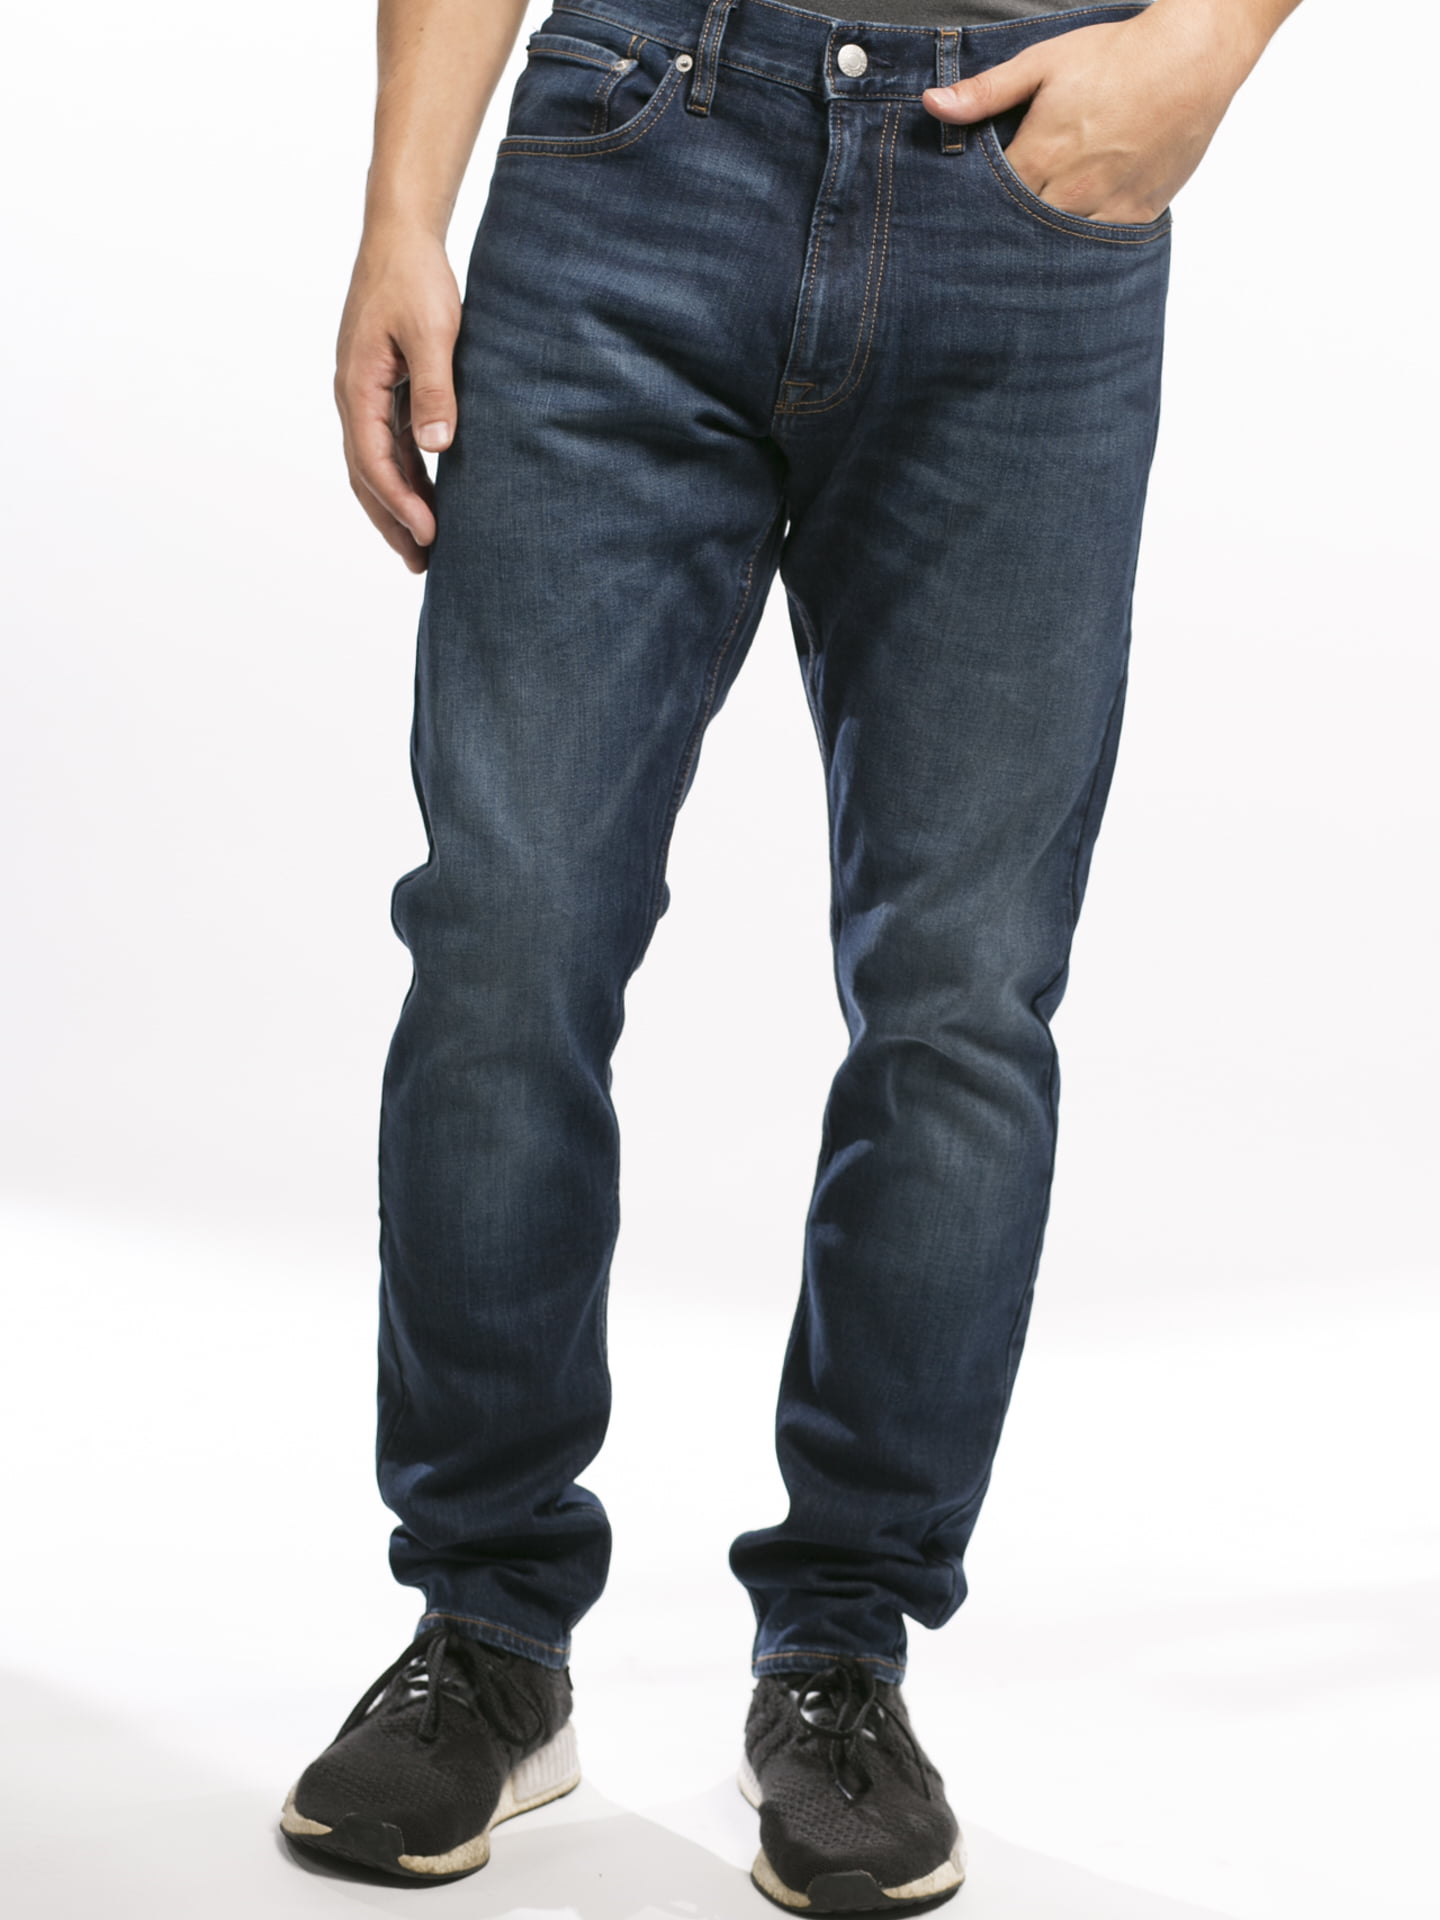 Calvin Klein Men's Athletic Paper Denim Pants - Austin Dark Blue, Austin  Dark Blue, 31X32 